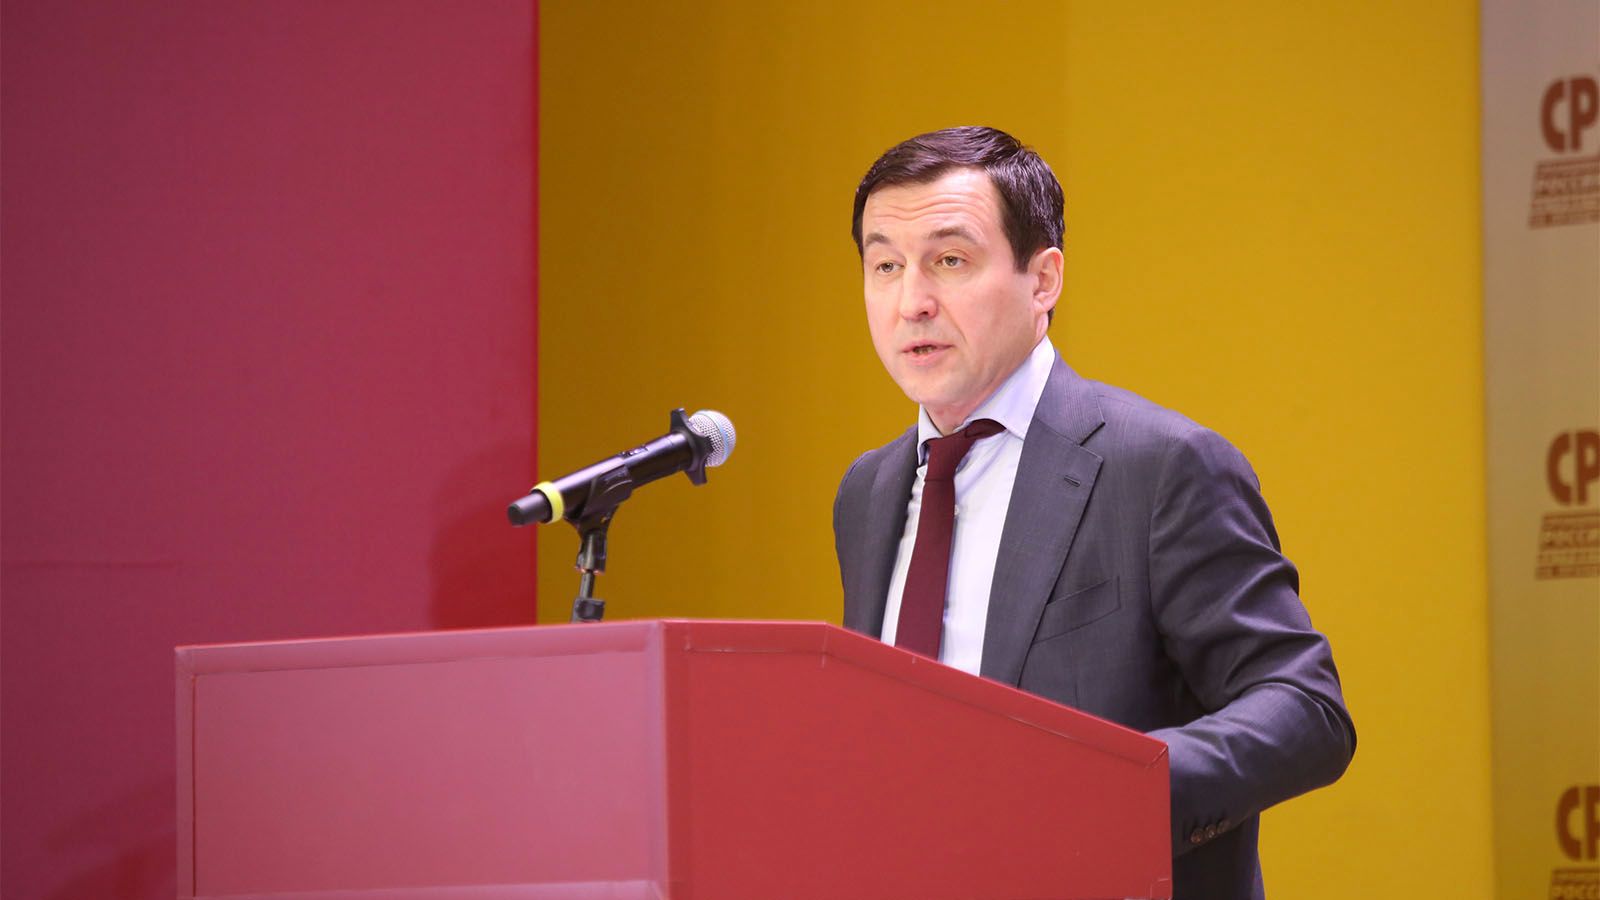 Дмитрий Гусев, депутат Госдумы, выступил за создание общего интернет-пространства со странами  БРИКС+